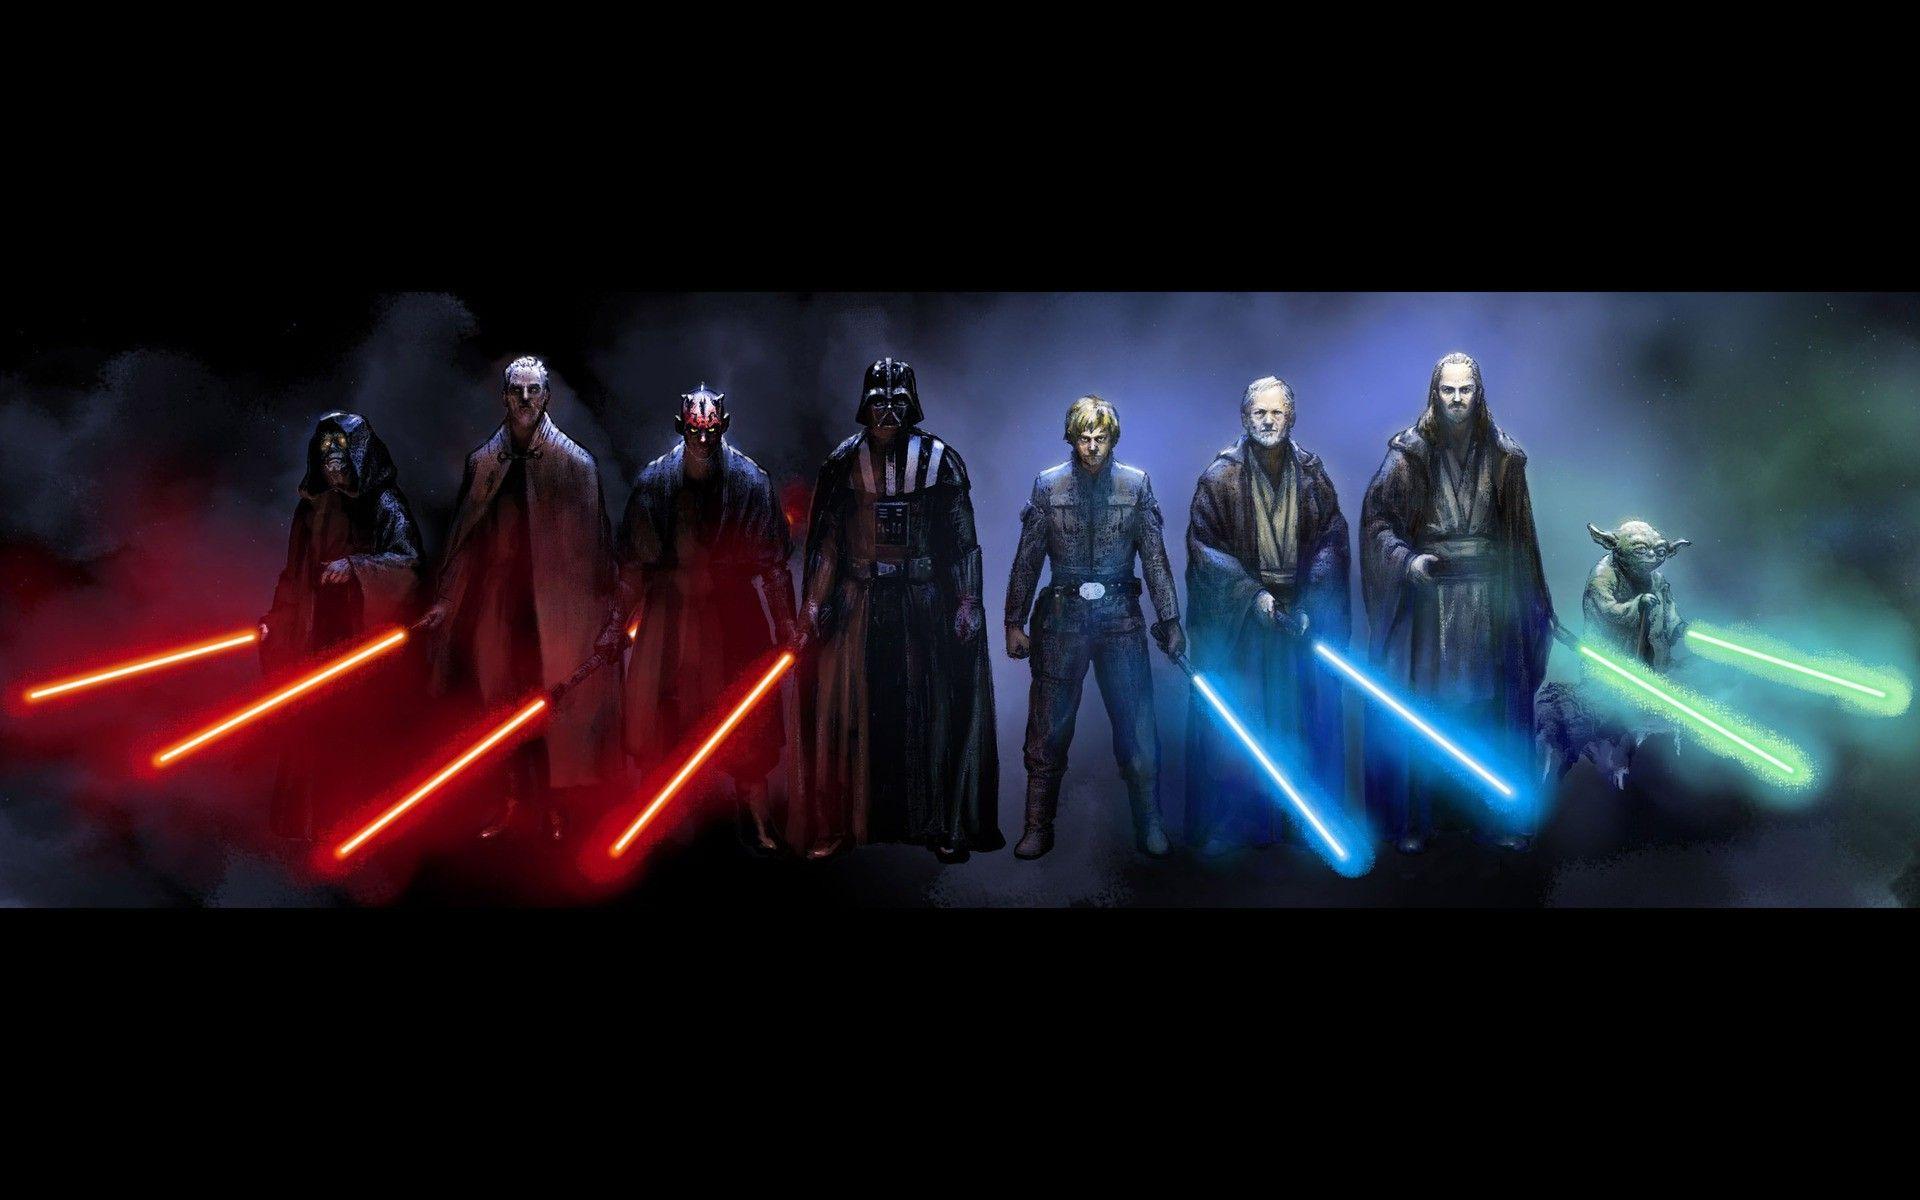 Yoda, Obi Wan Kenobi, Luke Skywalker, Qui Gon Jinn, Darth Vader